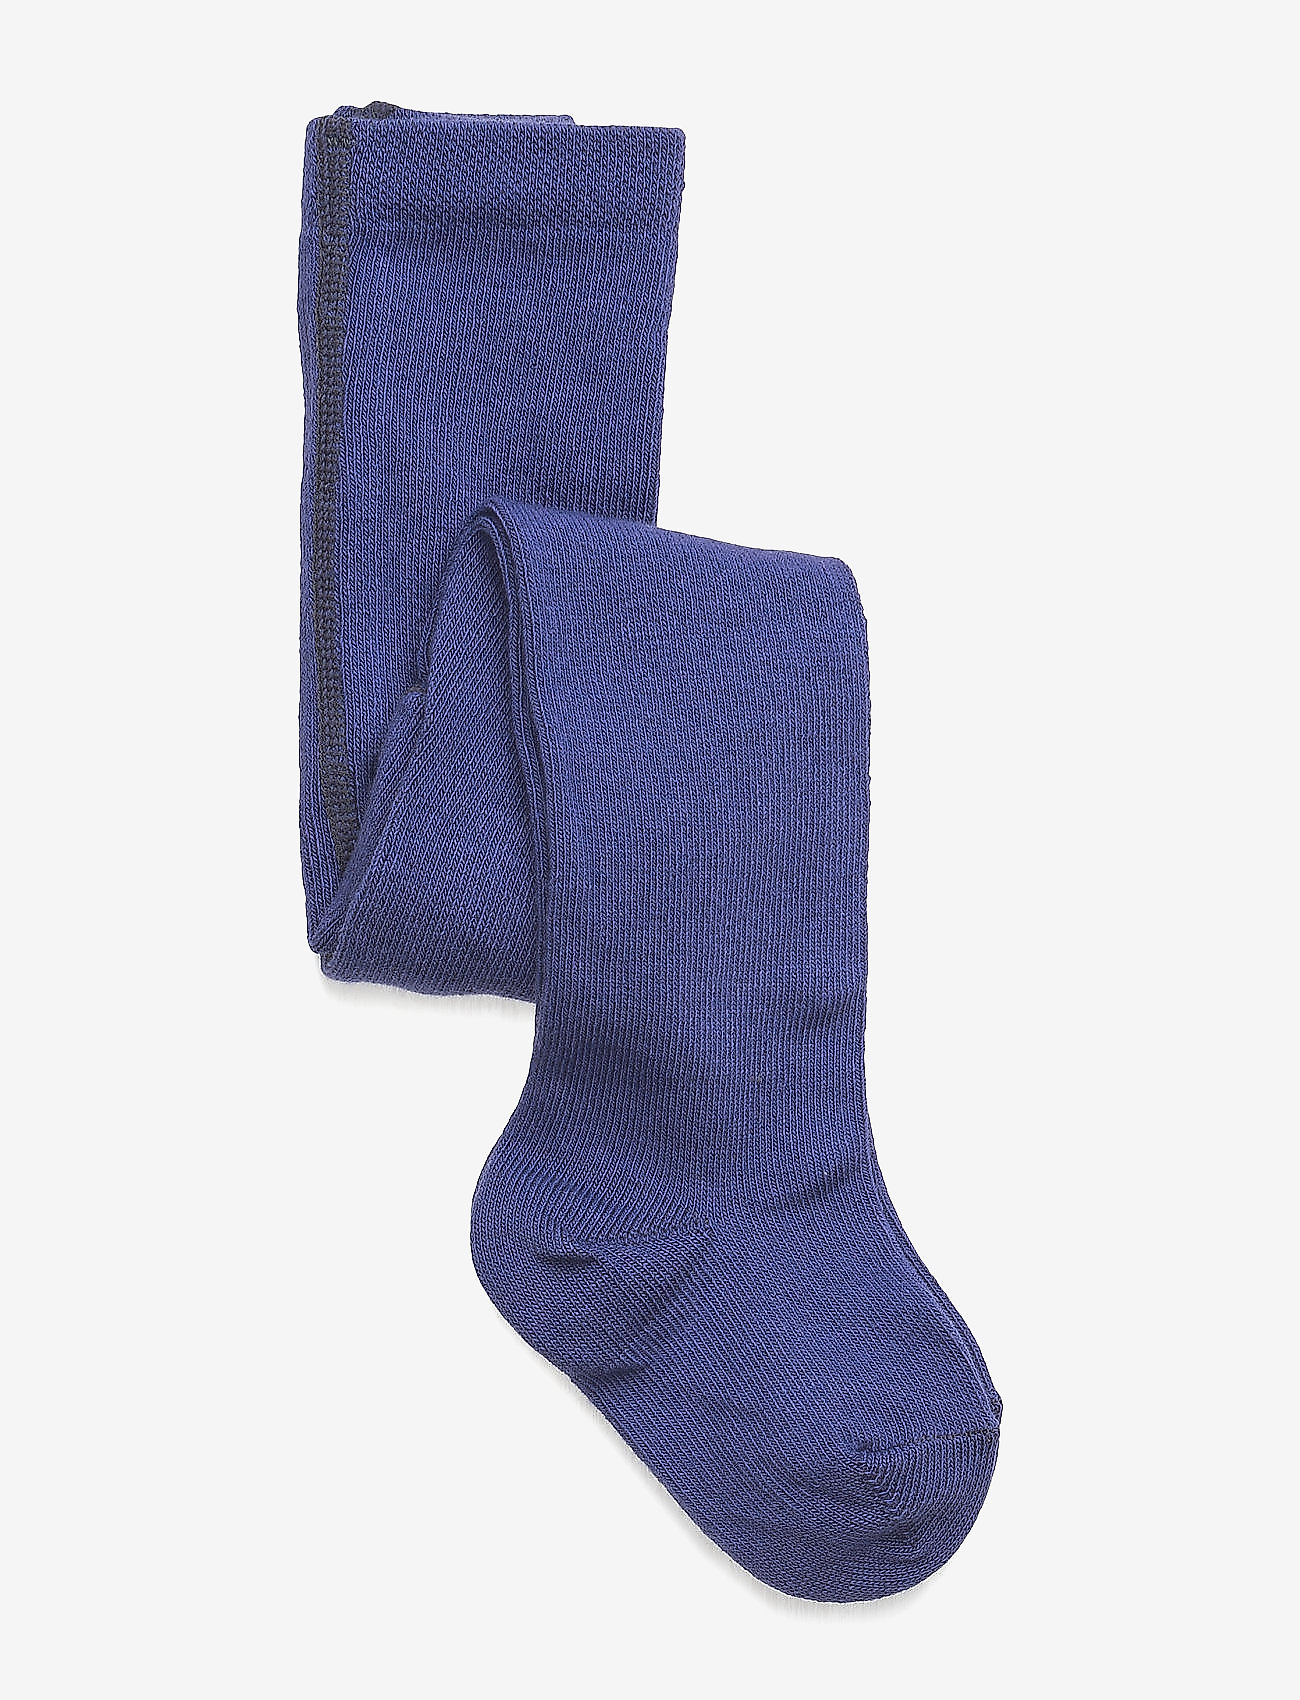 Melton - Cotton tights - tights - 741/dark violet (reddish) - 0